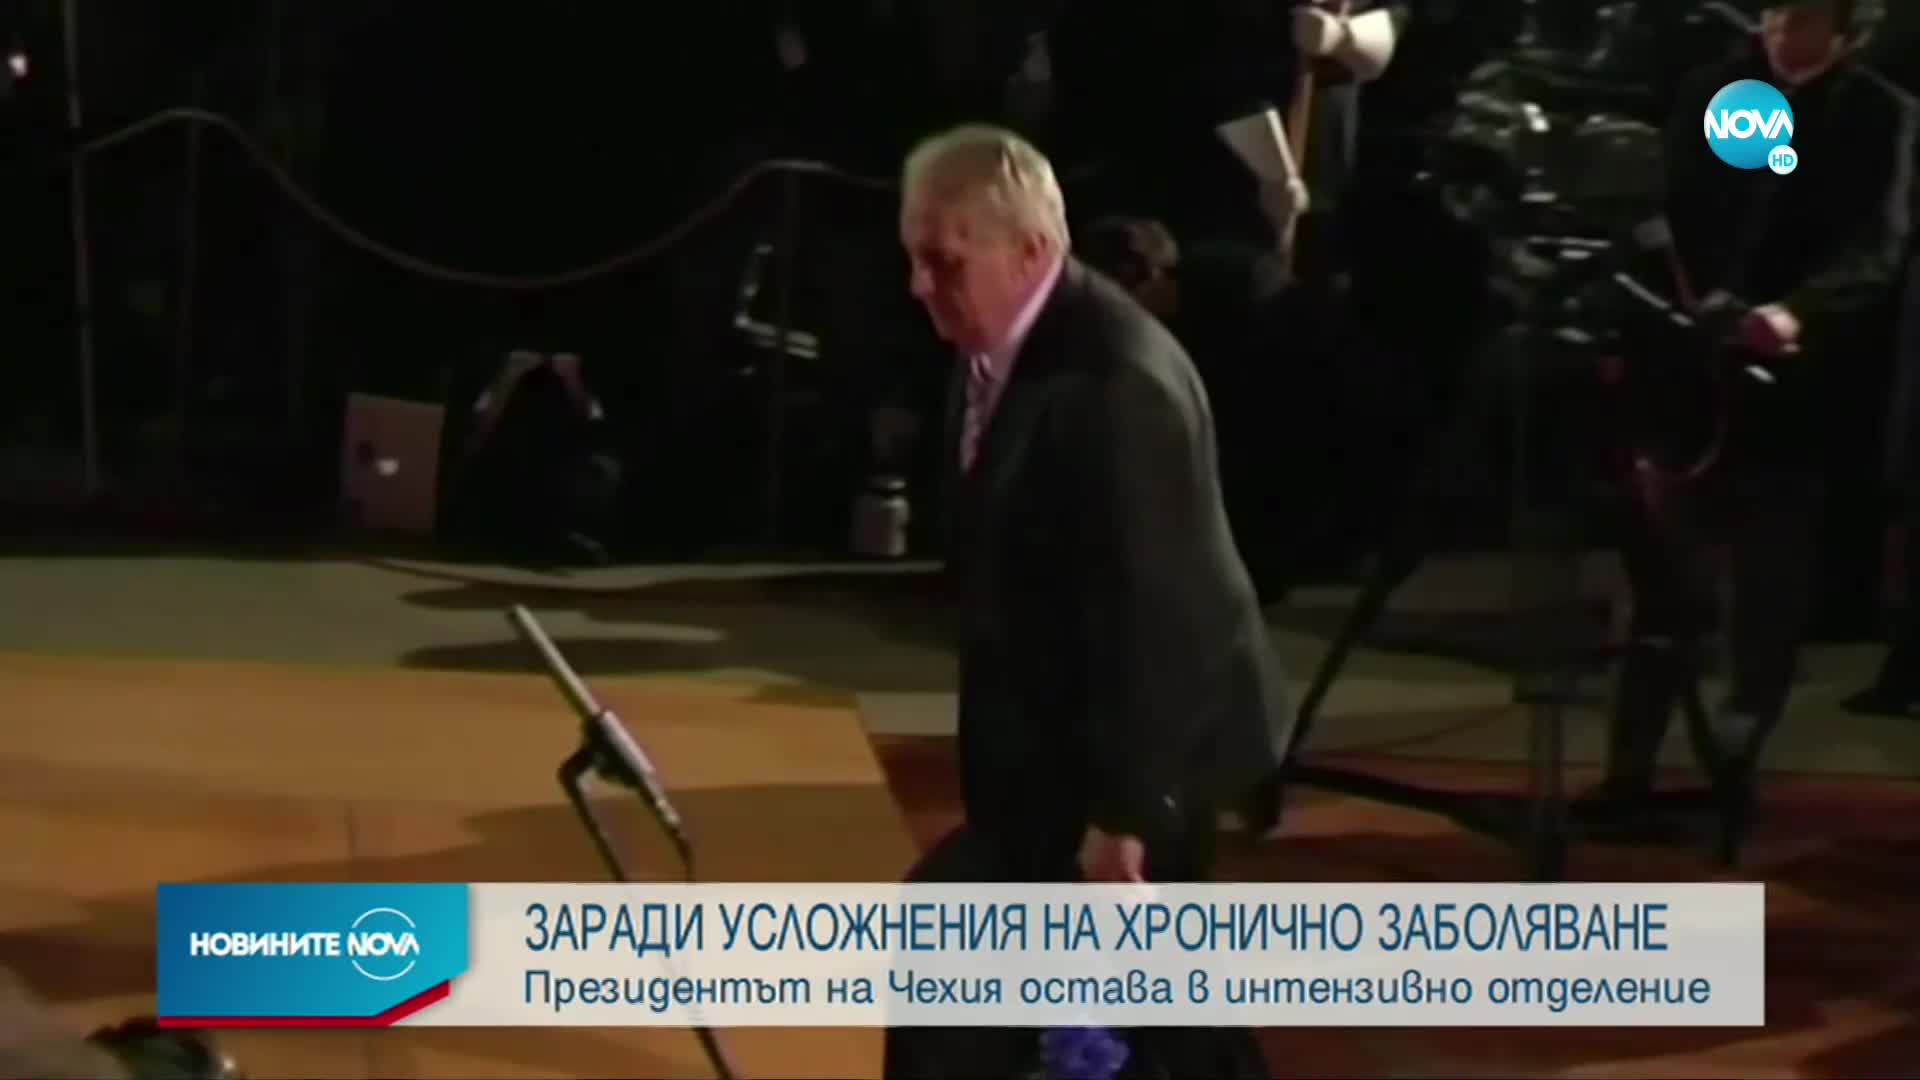 Президентът на Чехия остава в интензивно отделение